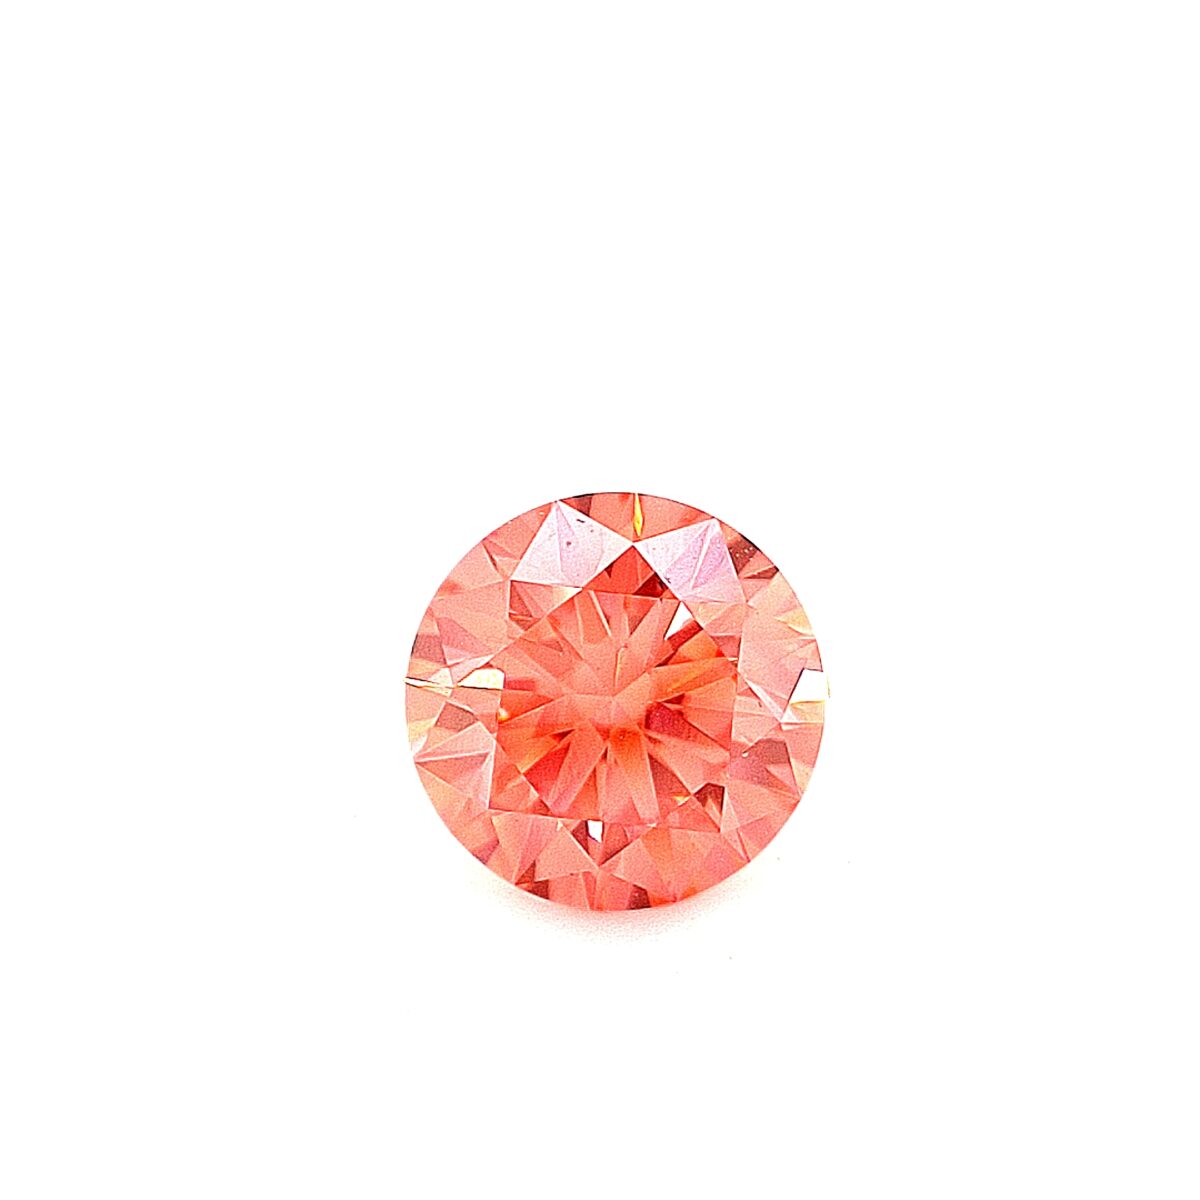 Swarovski Created Diamond Intense Pink_0